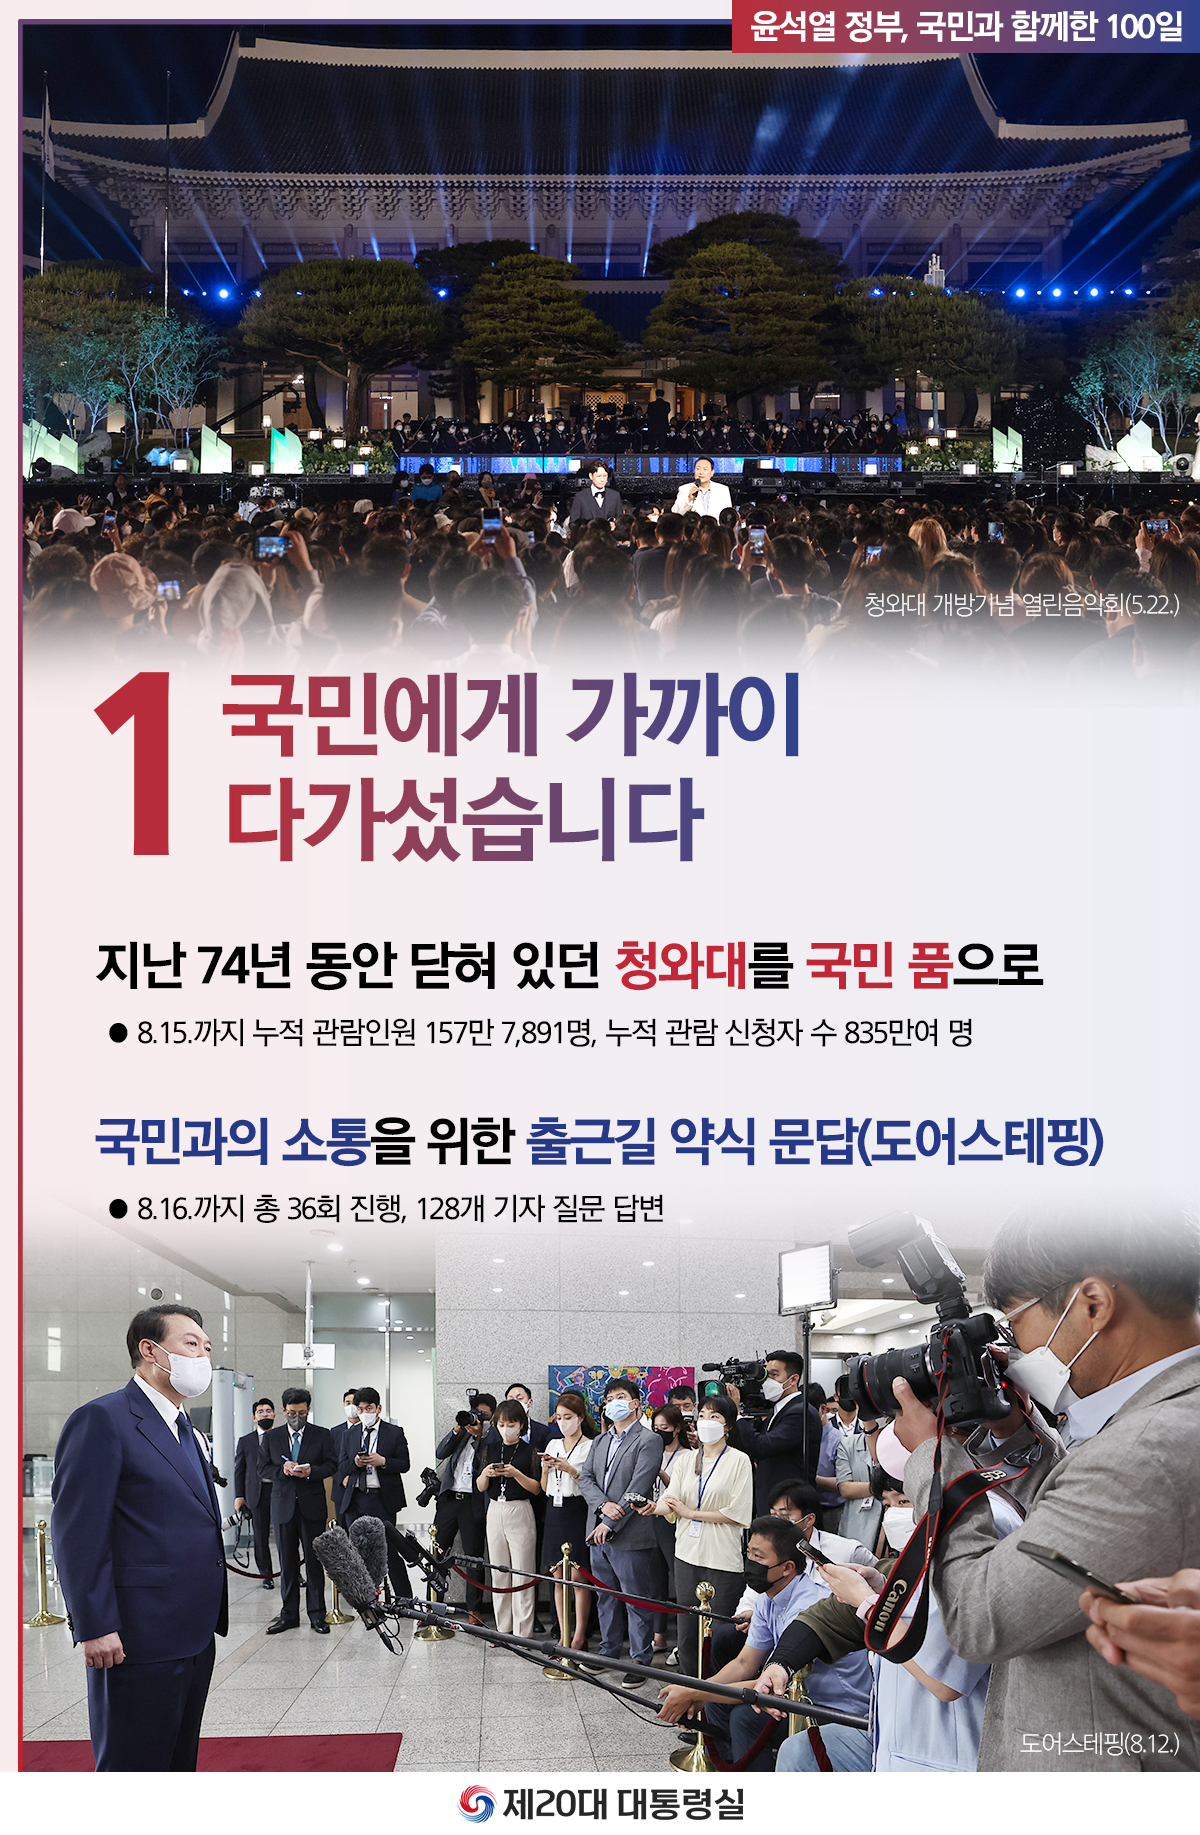 윤석열 정부의 100일, 국민과 함께한 시간들 슬라이드1